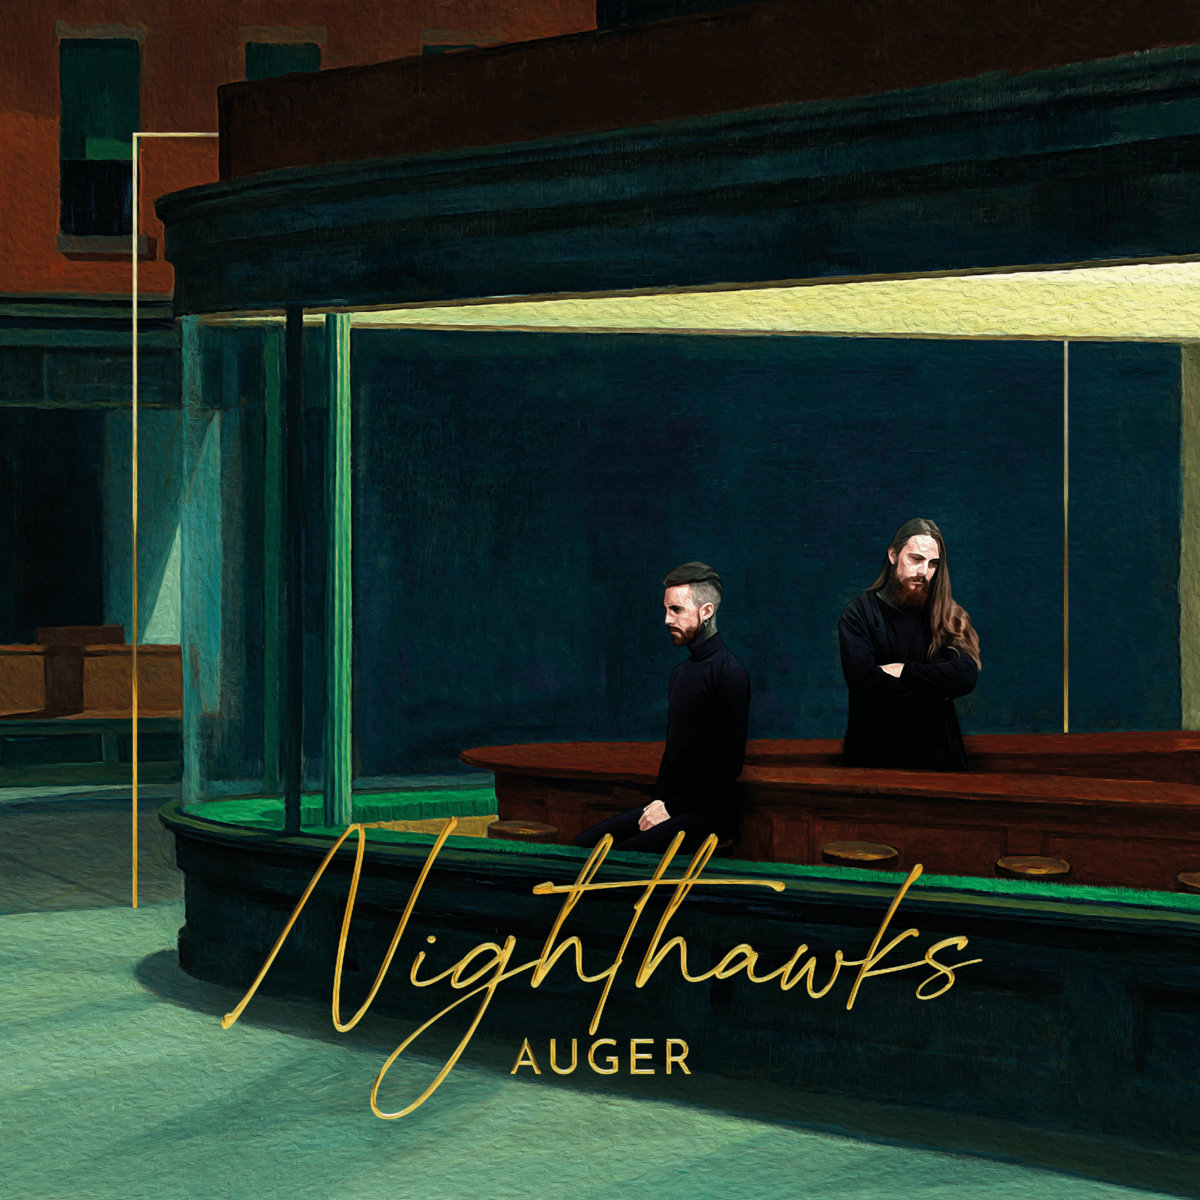 Chronique album Auger – Nighthawks (rock indus)